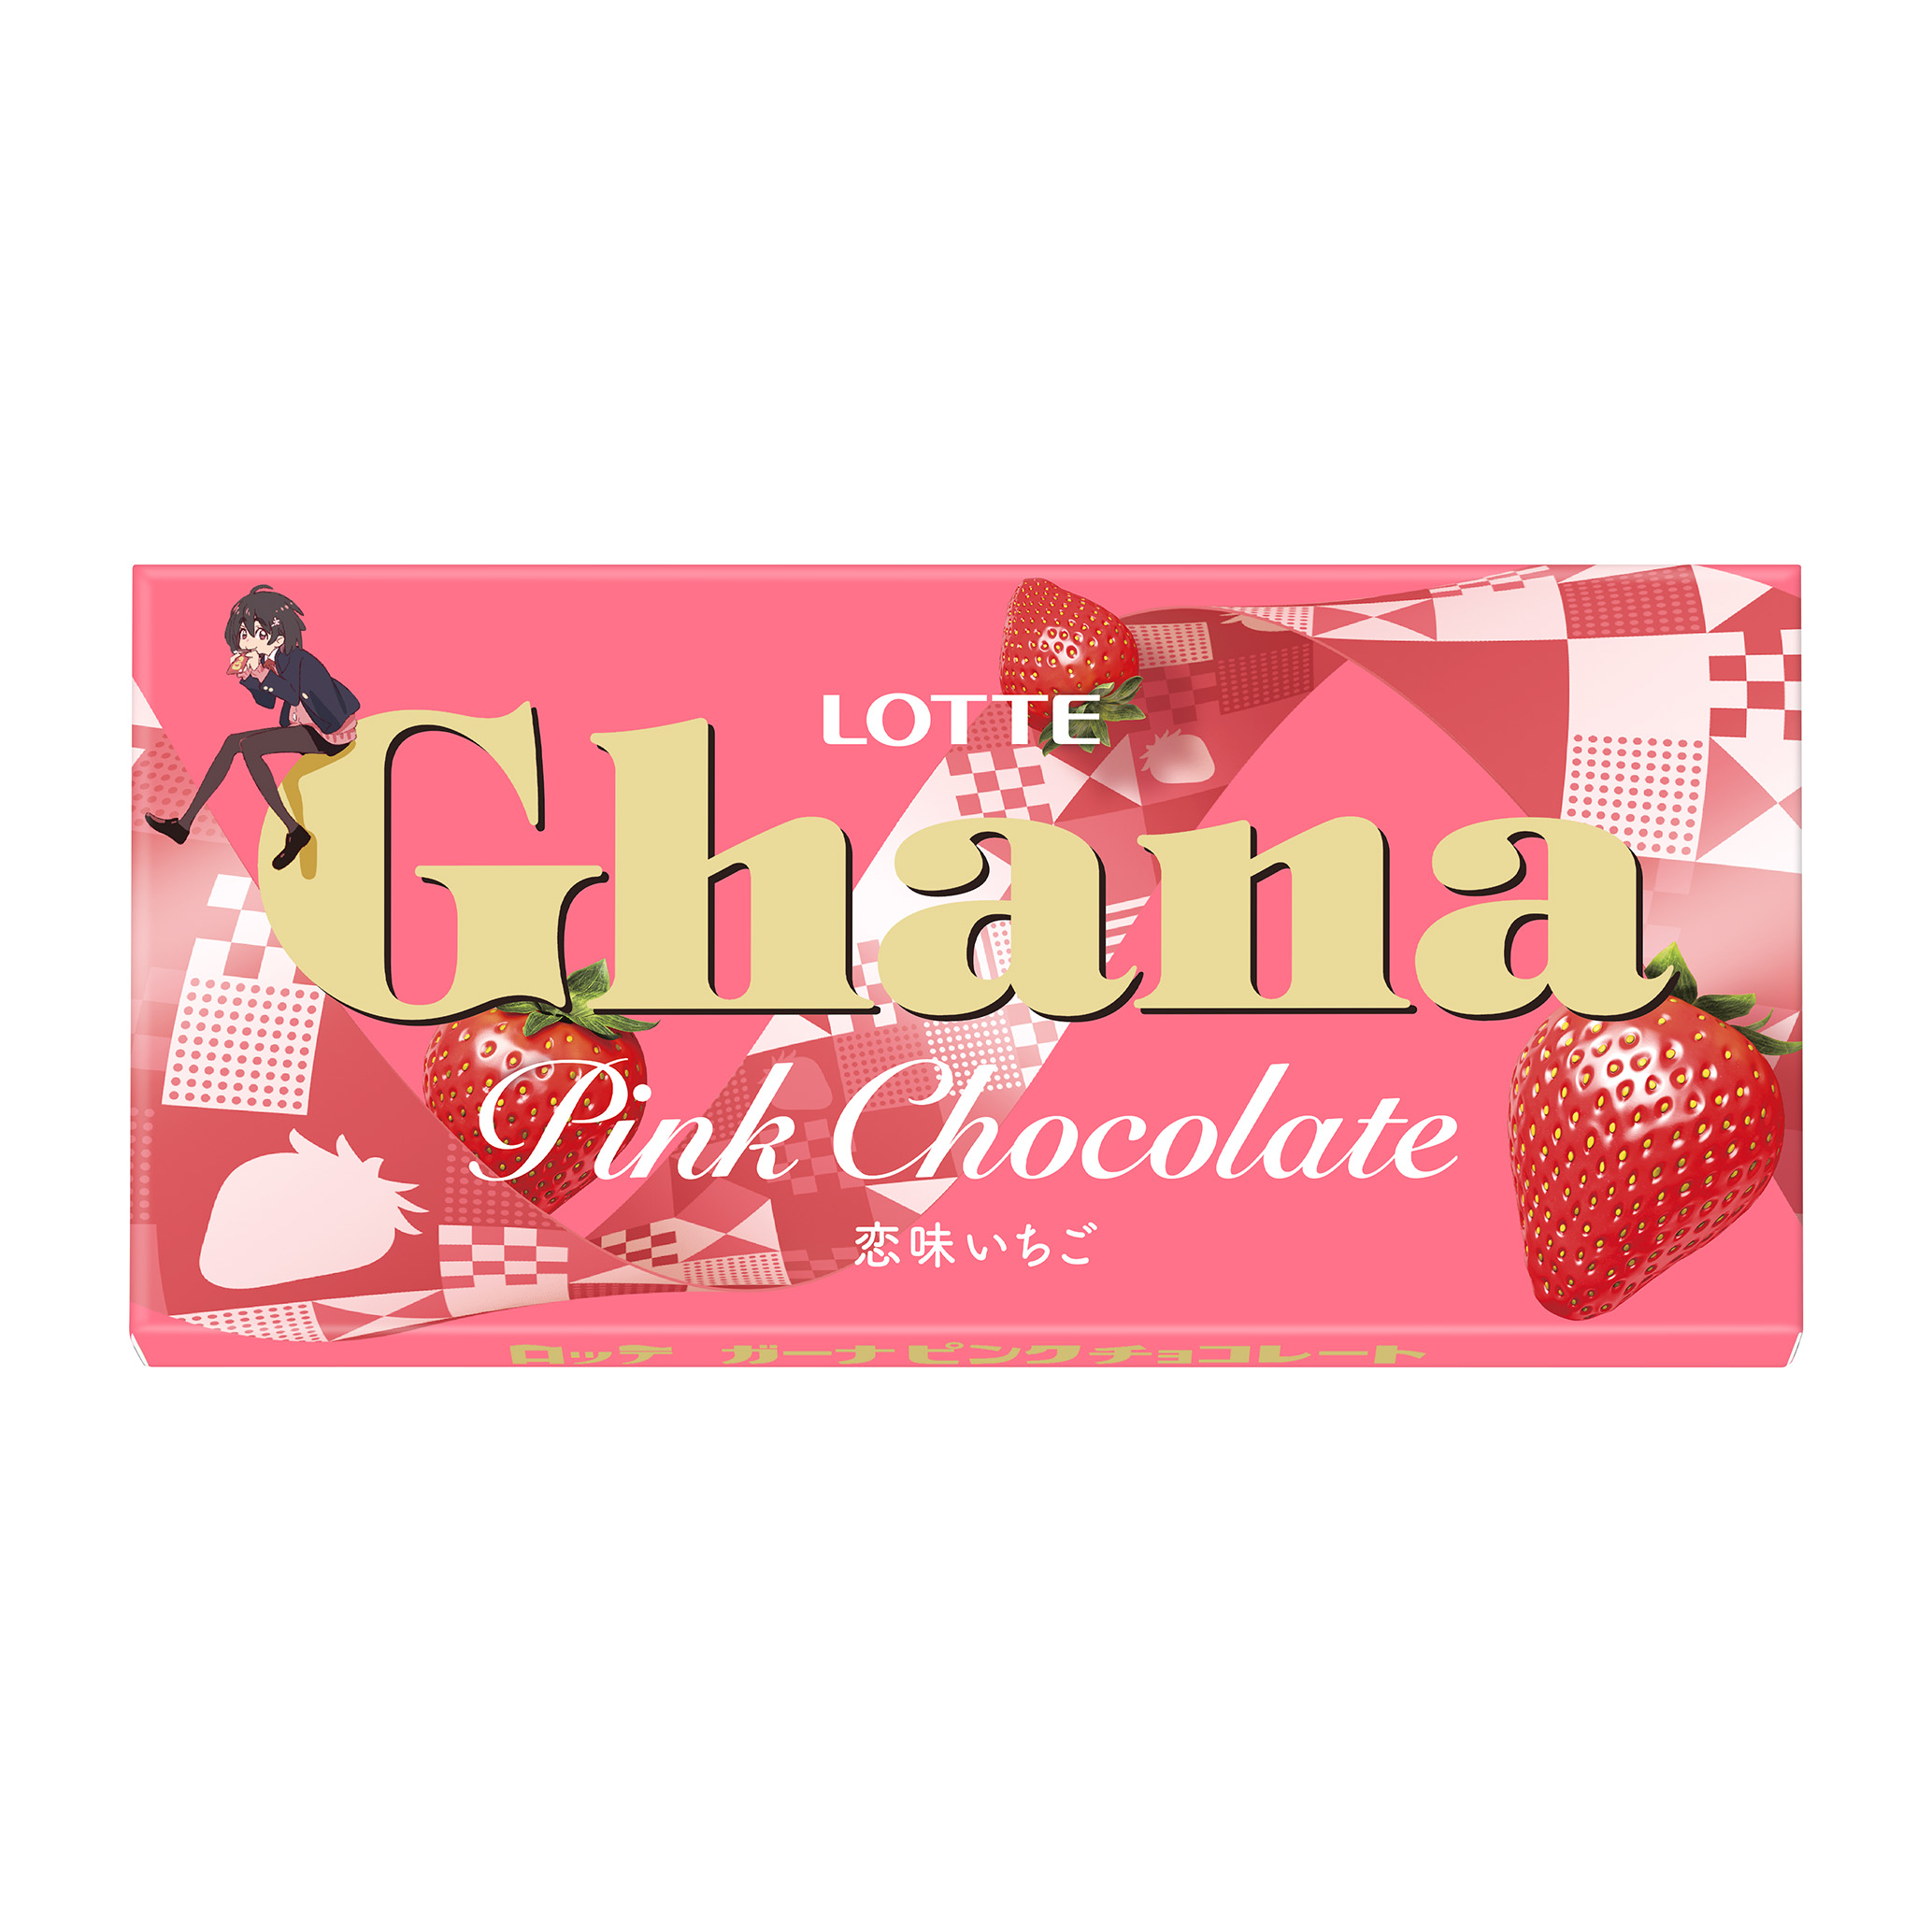 ピンクカラーでバレンタインを可愛く演出 ガーナの板チョコレートでは初めてとなるいちご味の商品 ガーナピンクチョコレート を全国で発売いたします 株式会社ロッテのプレスリリース